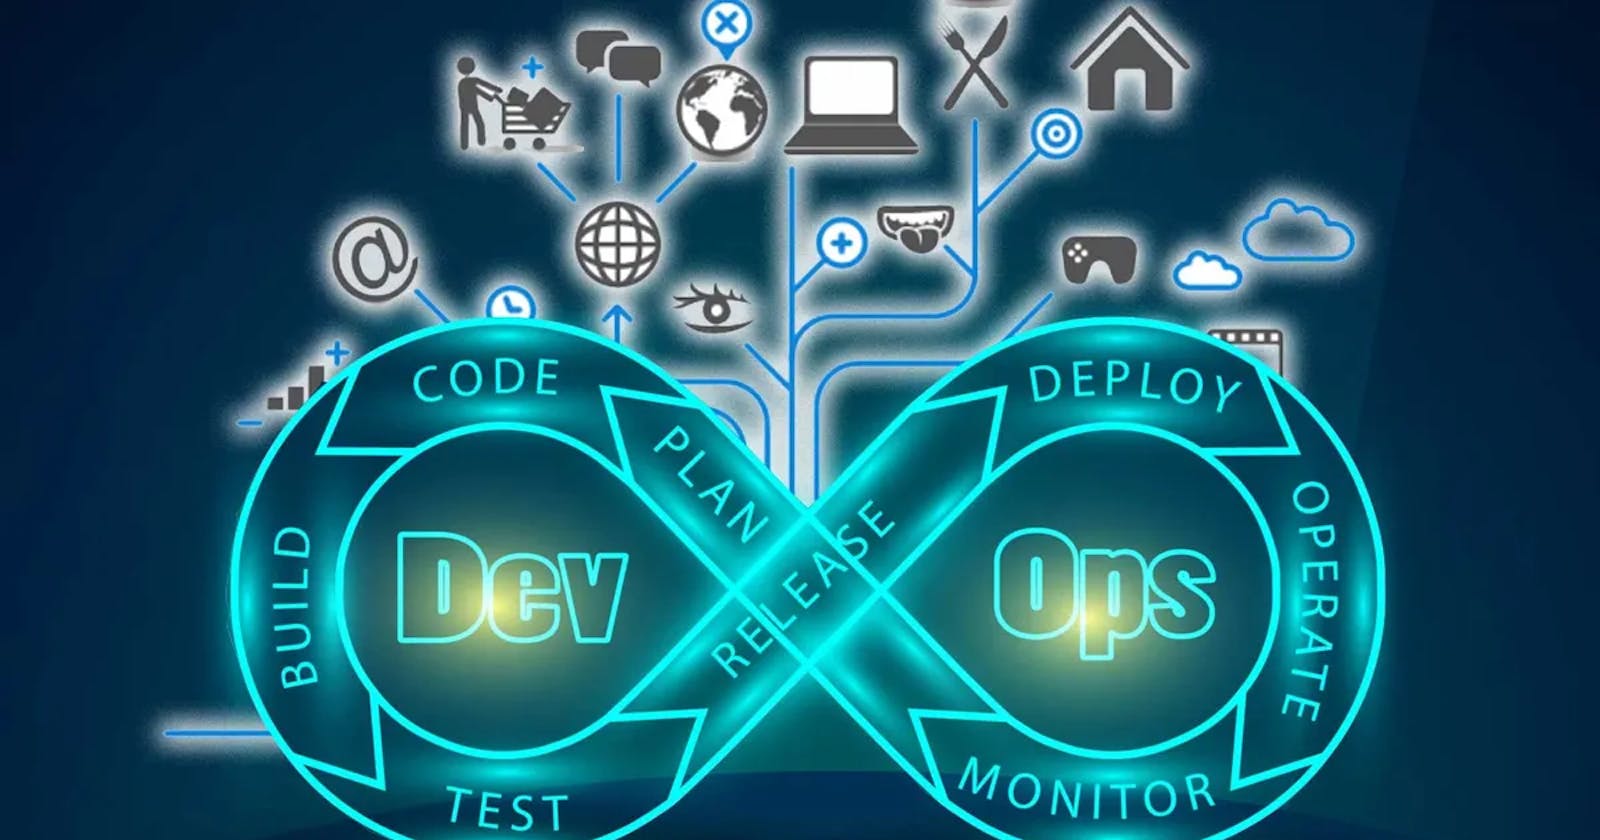 Introduction of DevOps and SDLC Models